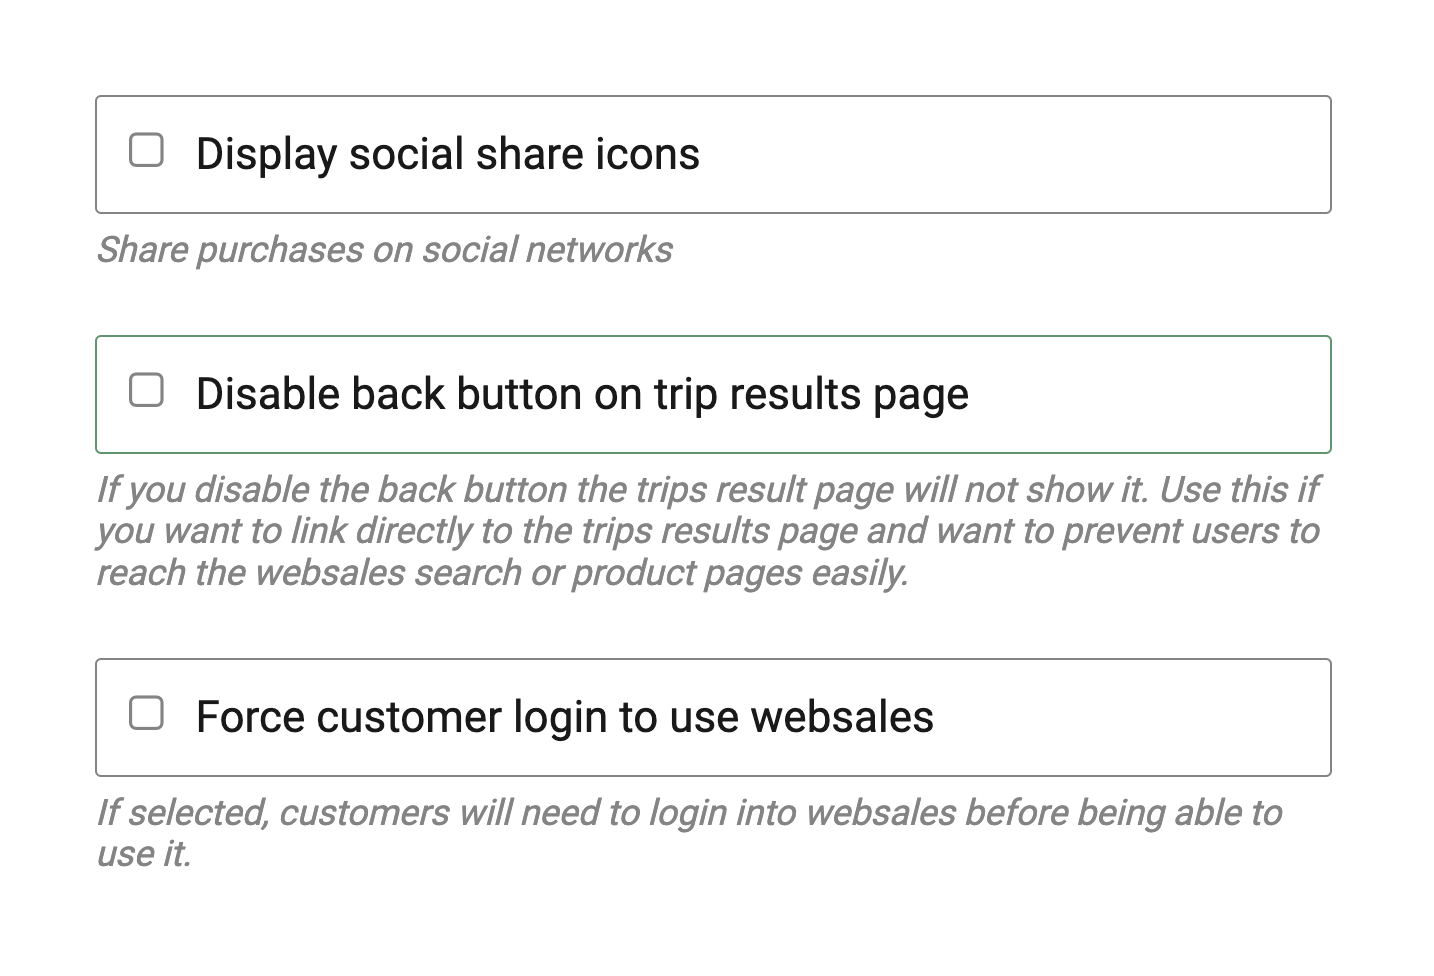 websales social links, back button, force login 